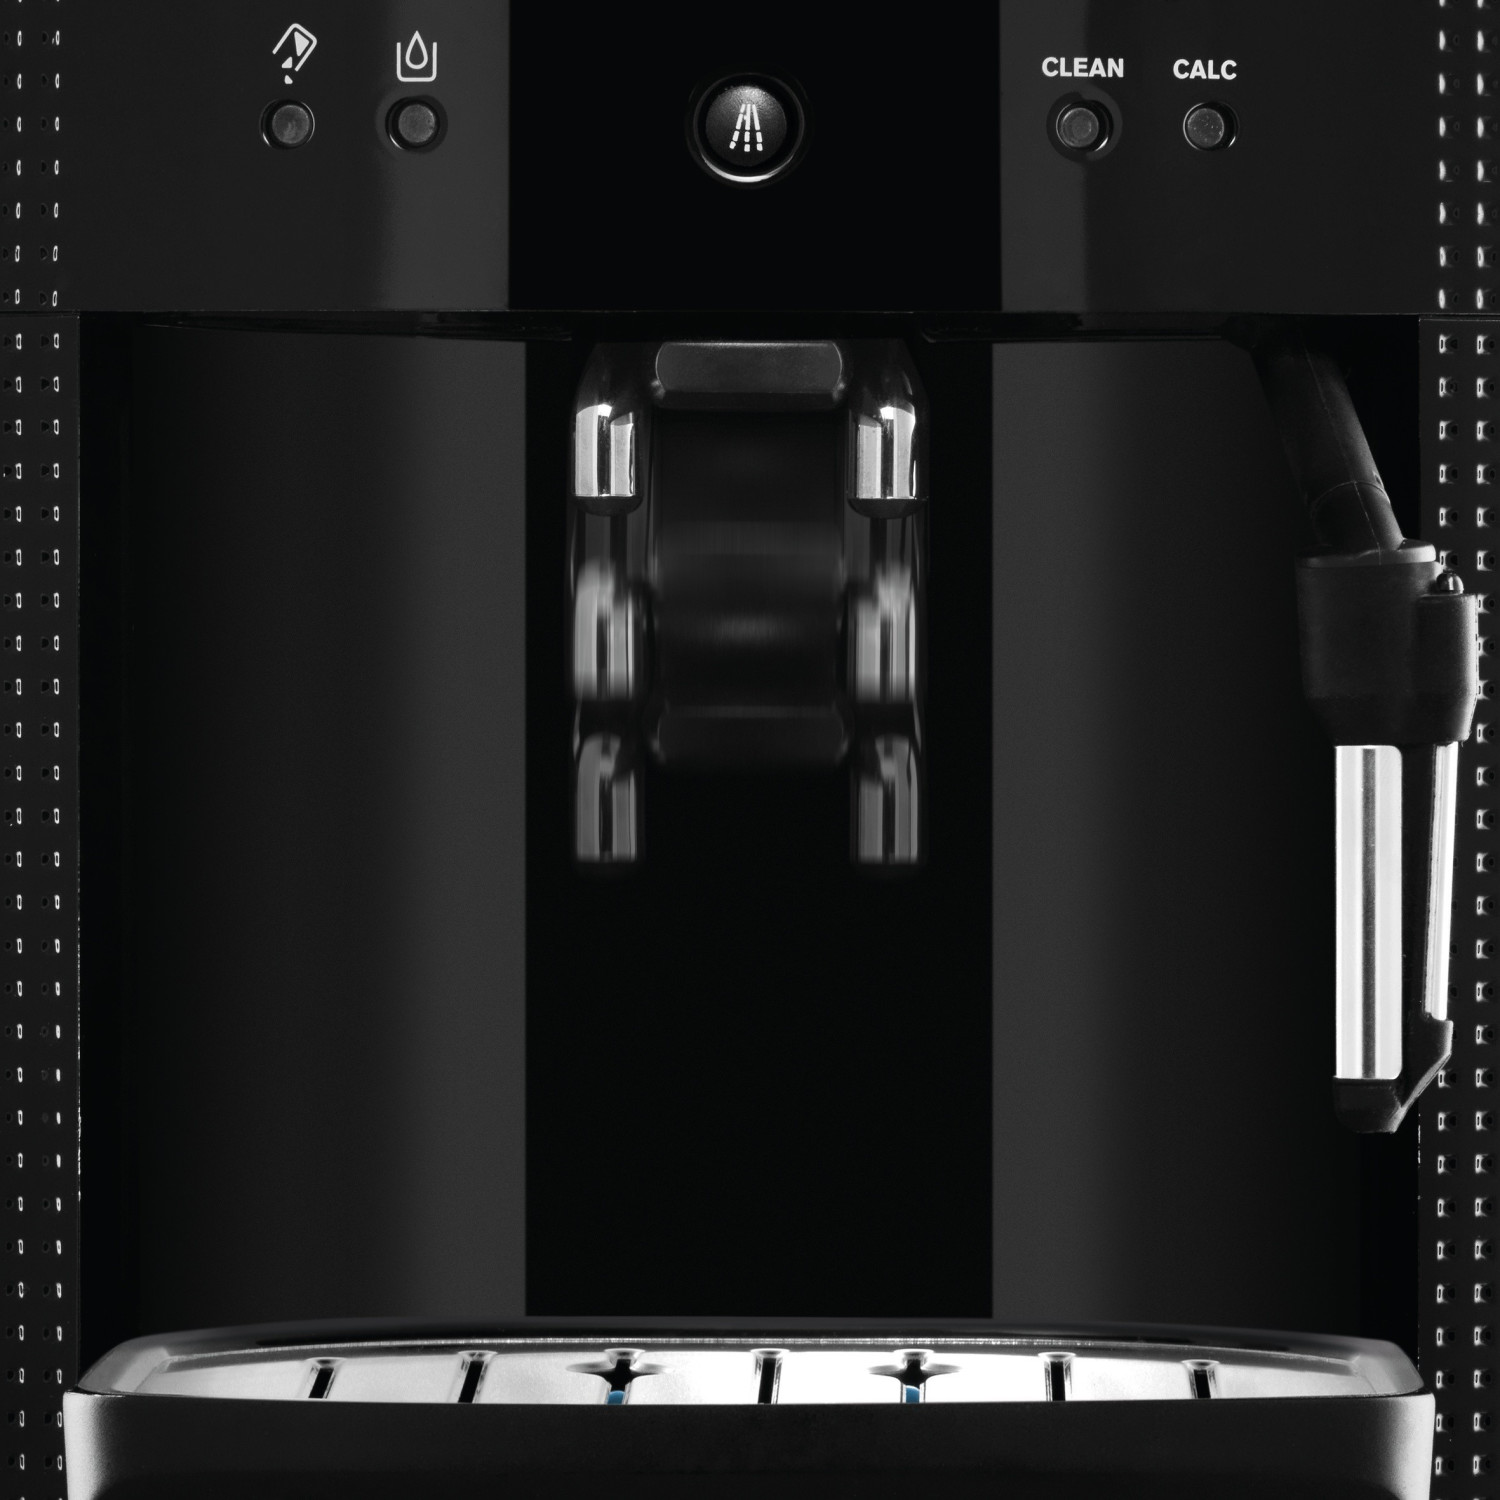 Machine à café grains robot broyeur Krups Essential Blanche EA810570